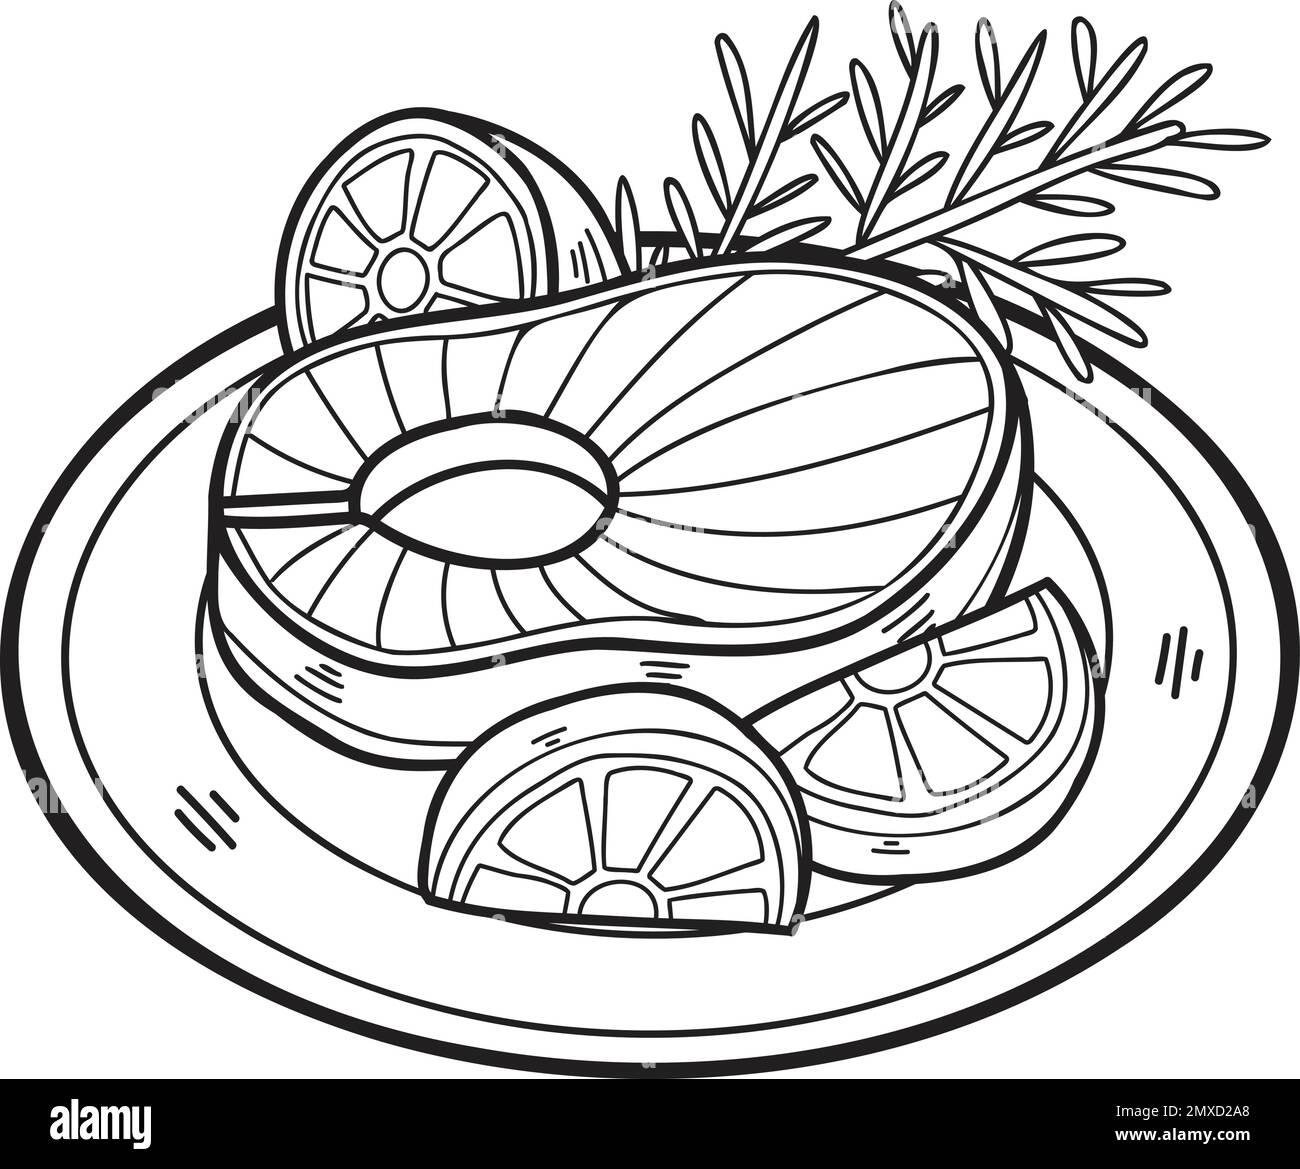 Bistecca di salmone disegnata a mano su un piatto in stile doodle isolato sullo sfondo Illustrazione Vettoriale